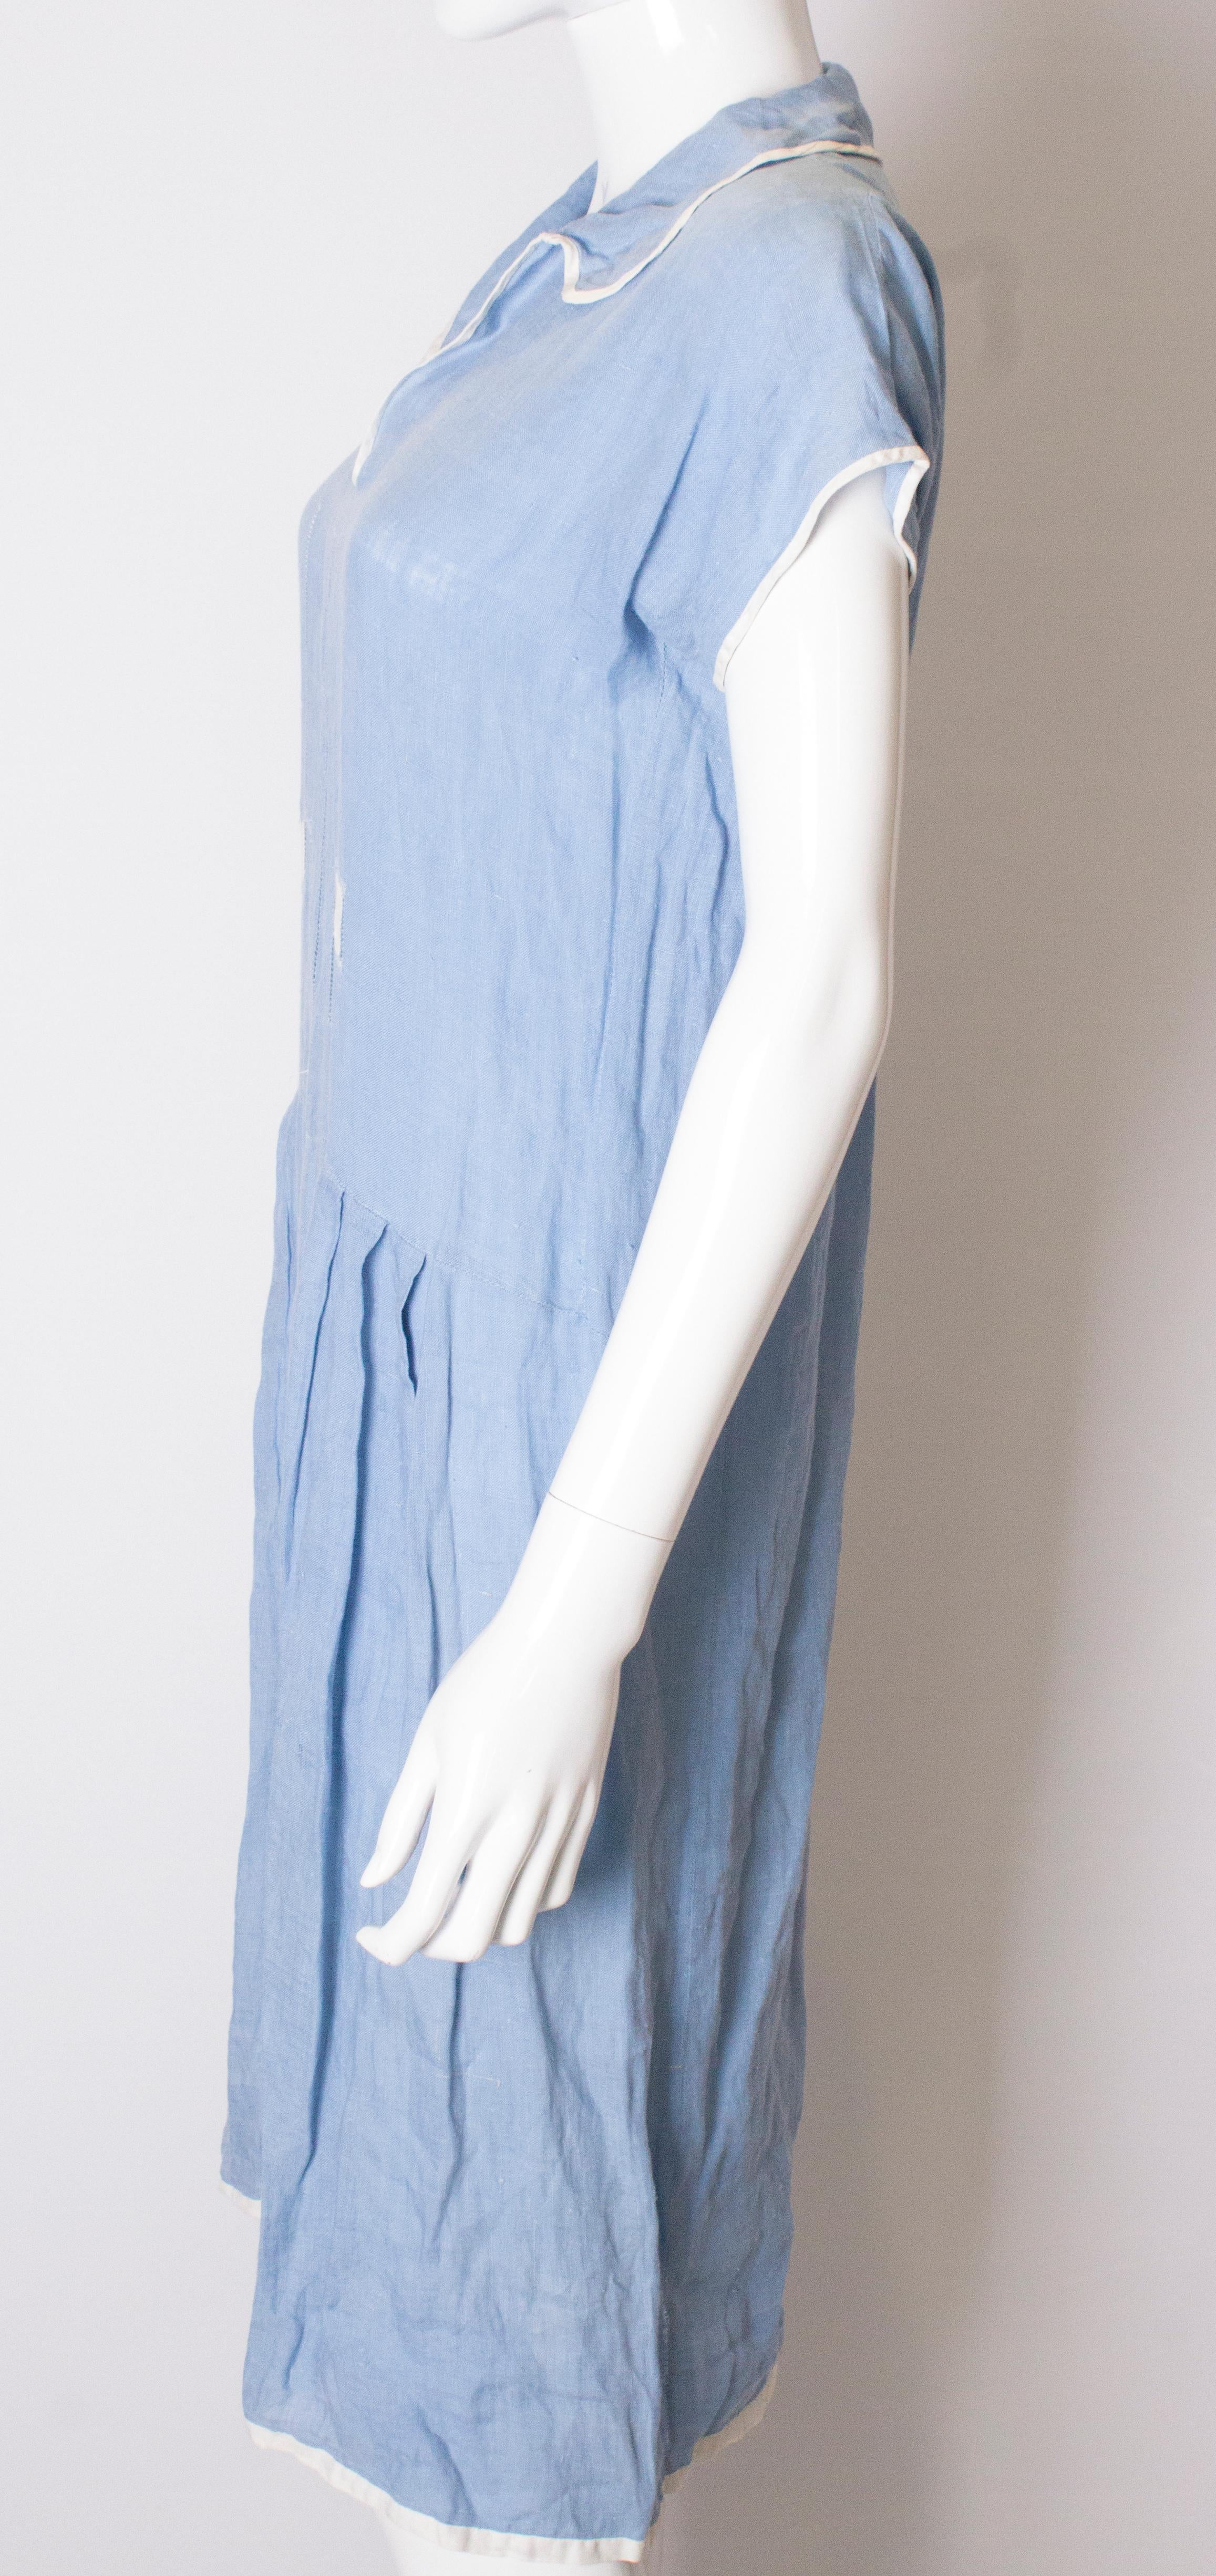 light blue linen dress